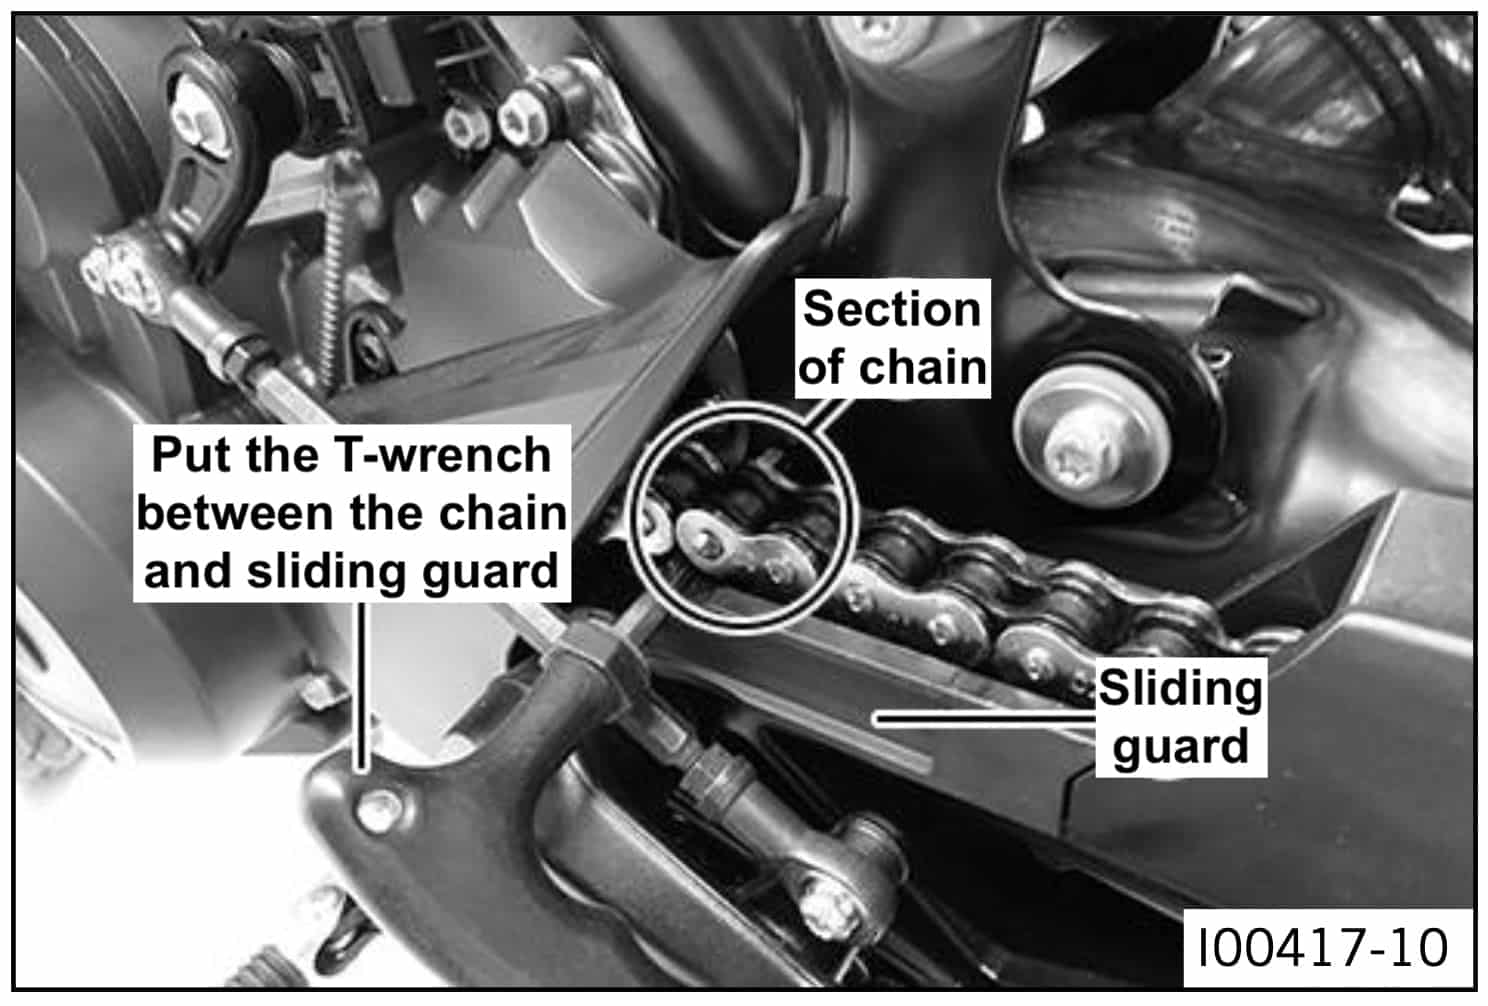 KTM 890 SMT adjusting chain tension 2